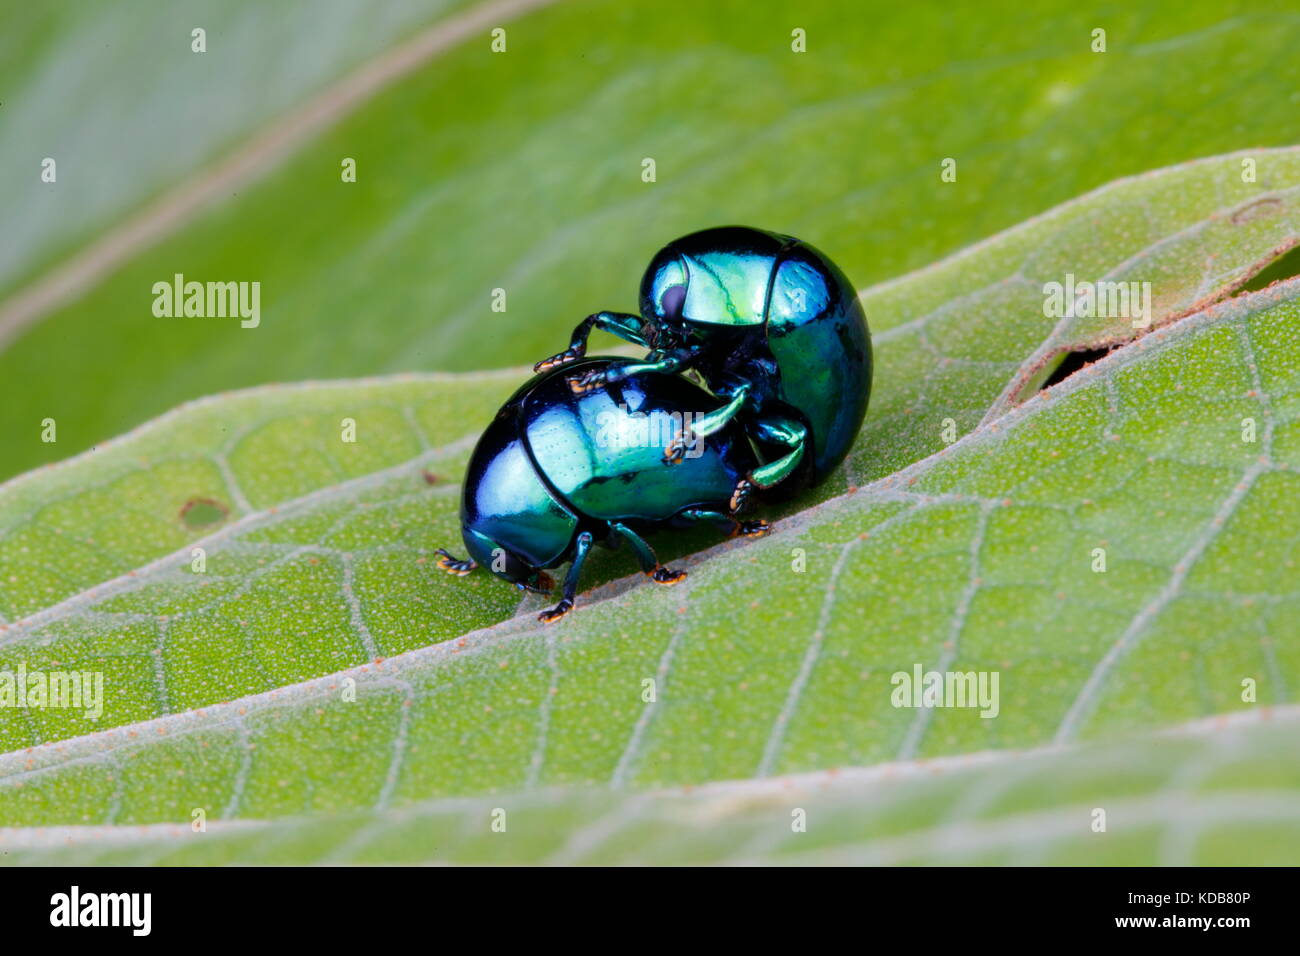 Una pillola scarabeo, specie Ceratocanthus, coniugata su una foglia. Foto Stock